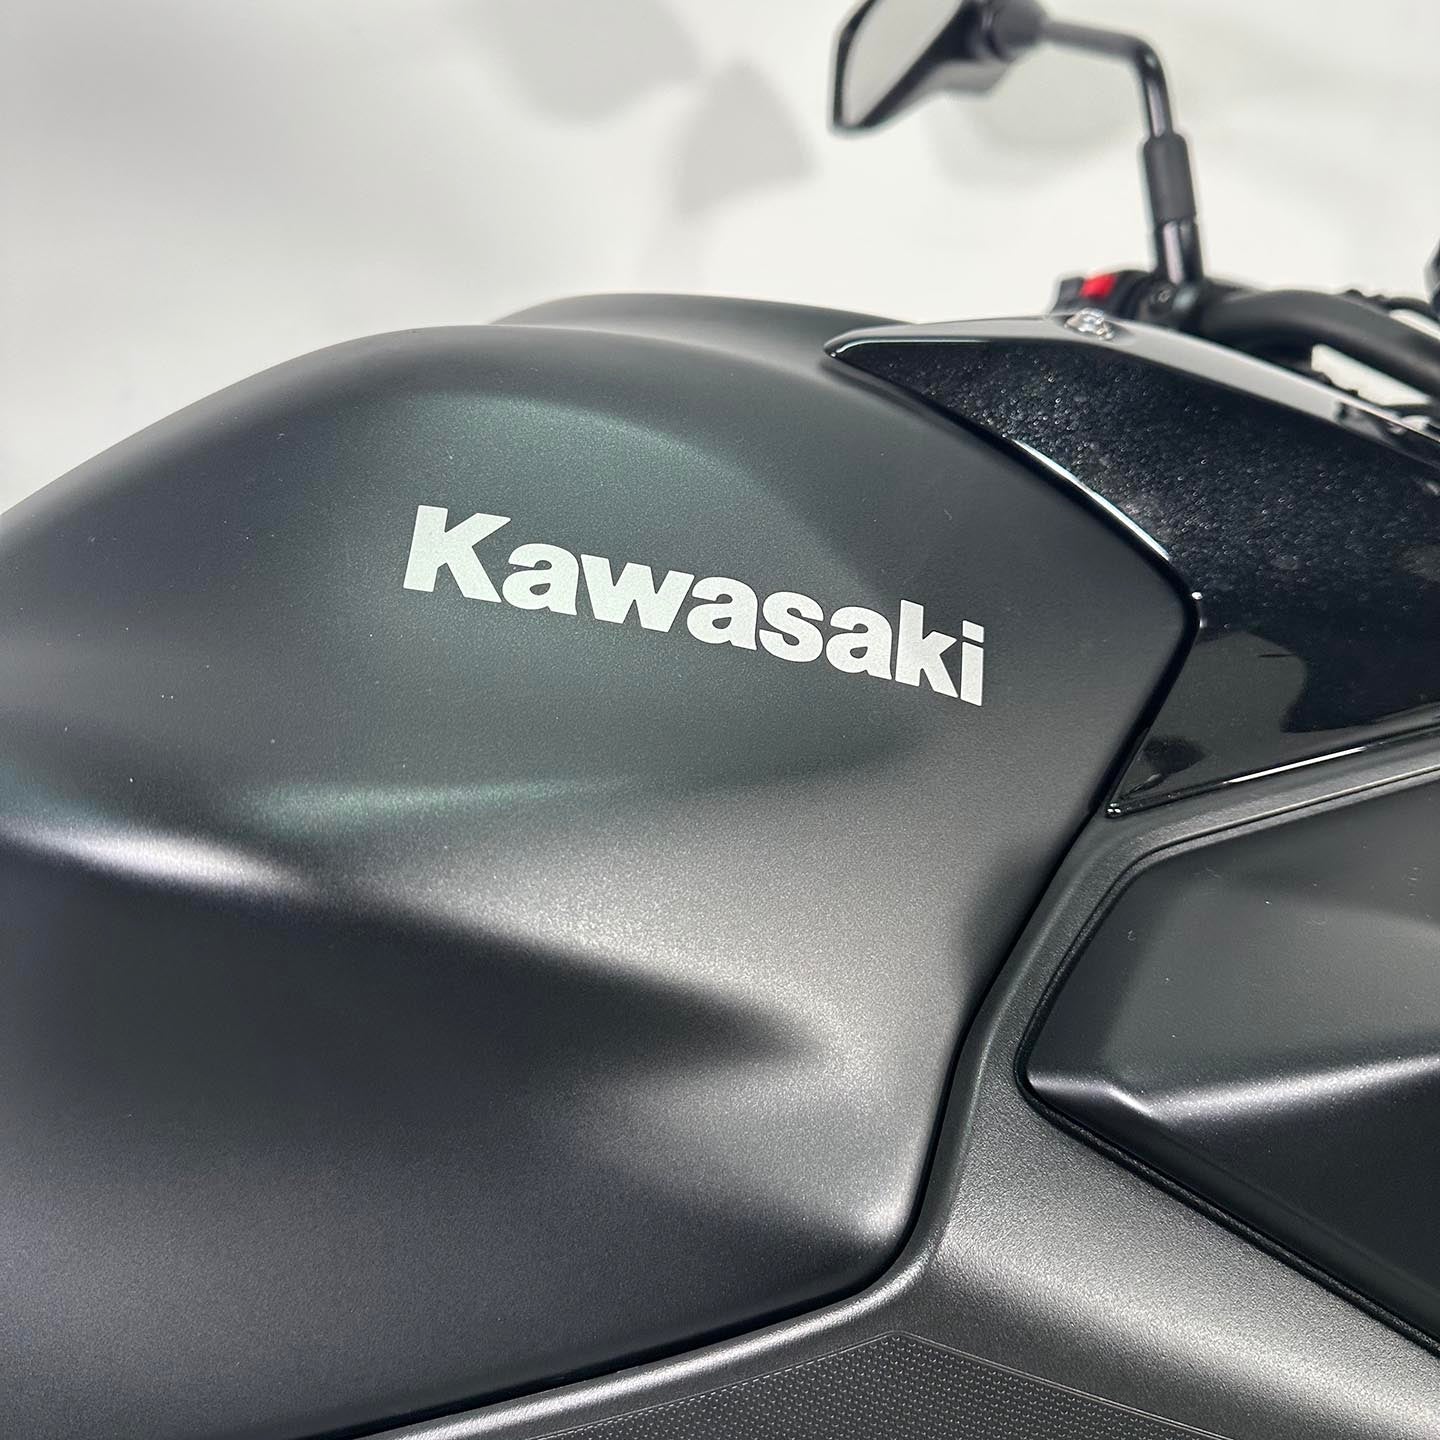 2018 Kawasaki Z650 ABS (1,021 Miles)